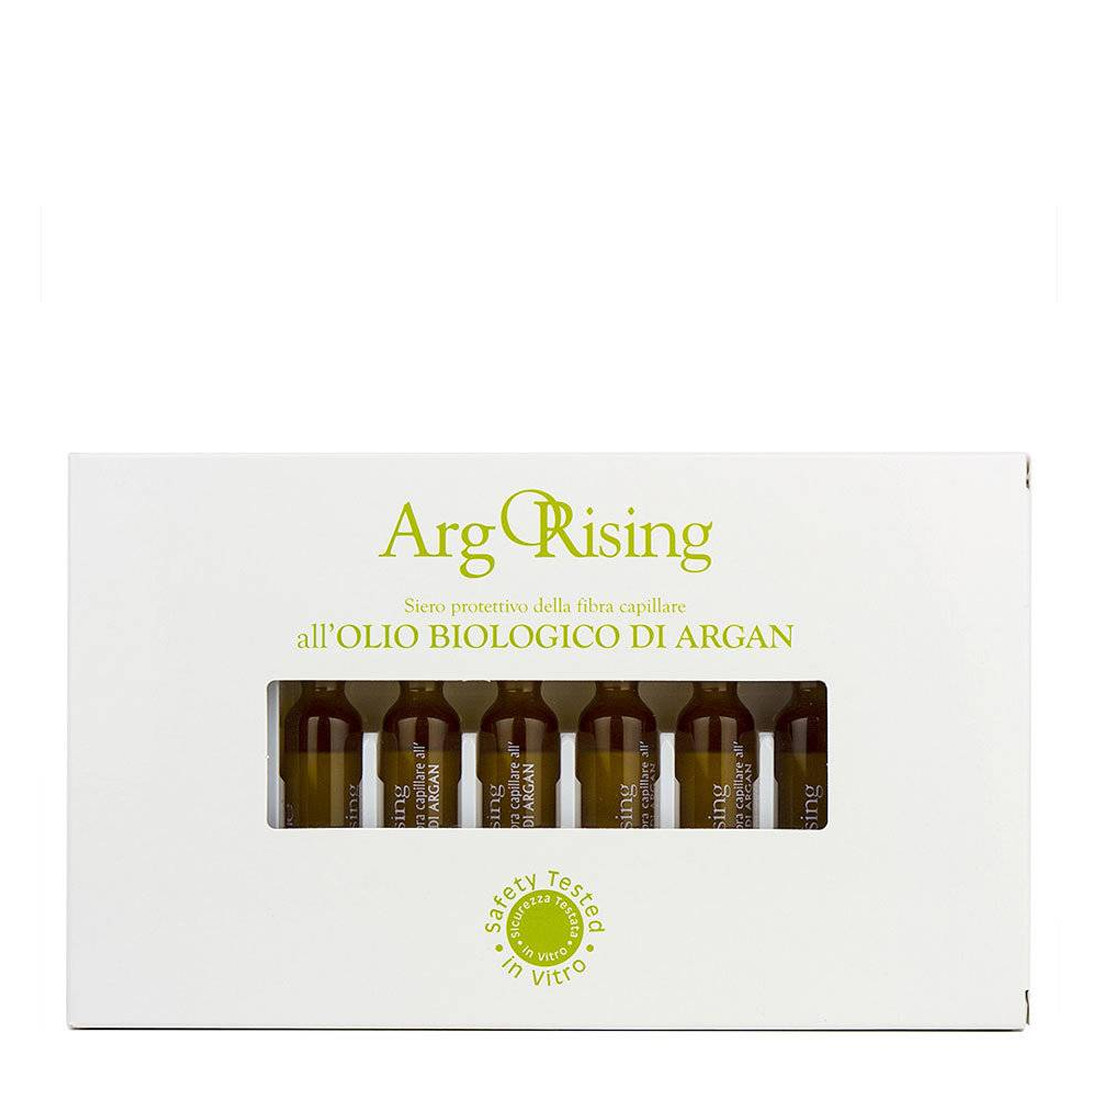 Orising ArgOrising Lotion - Фитоэссенциальный лосьон для сухих волос